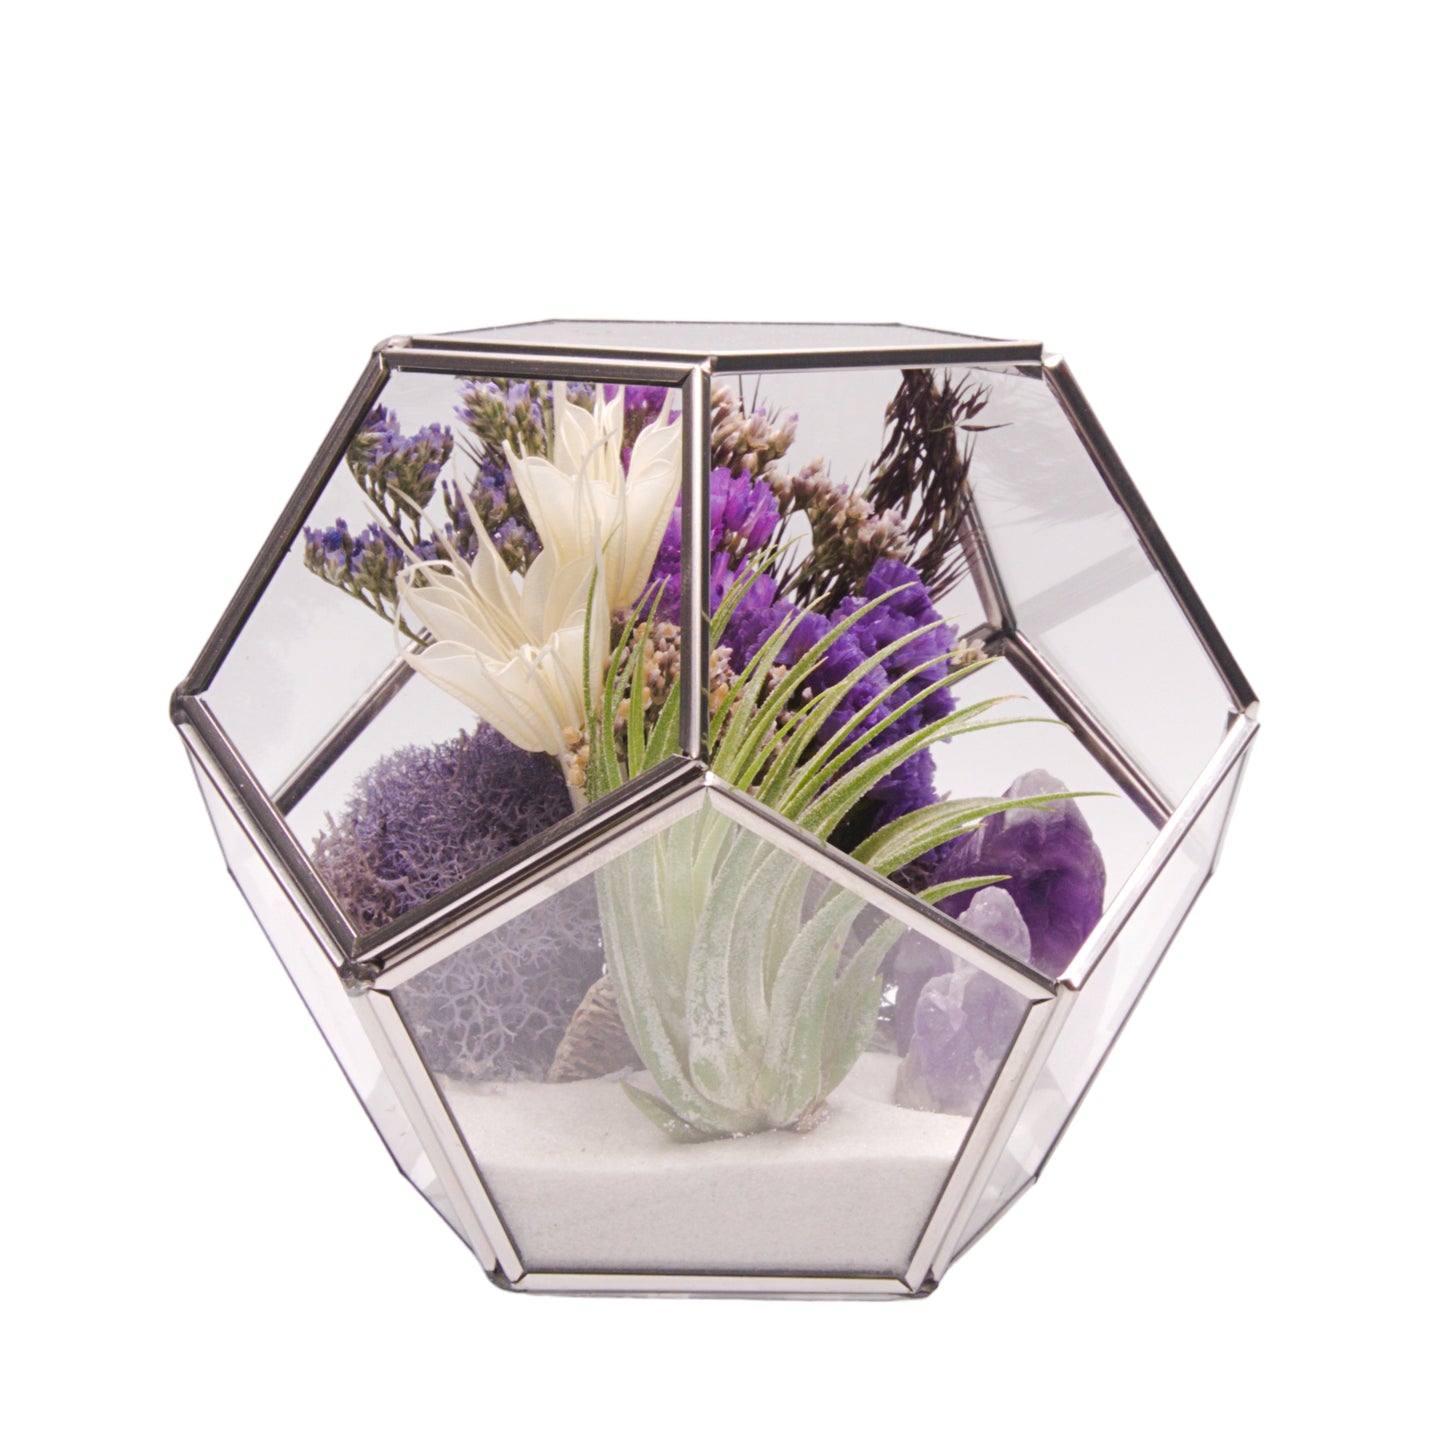 Terrarium Victorian à bol avec une plante aérienne et des cristaux d'améthystes